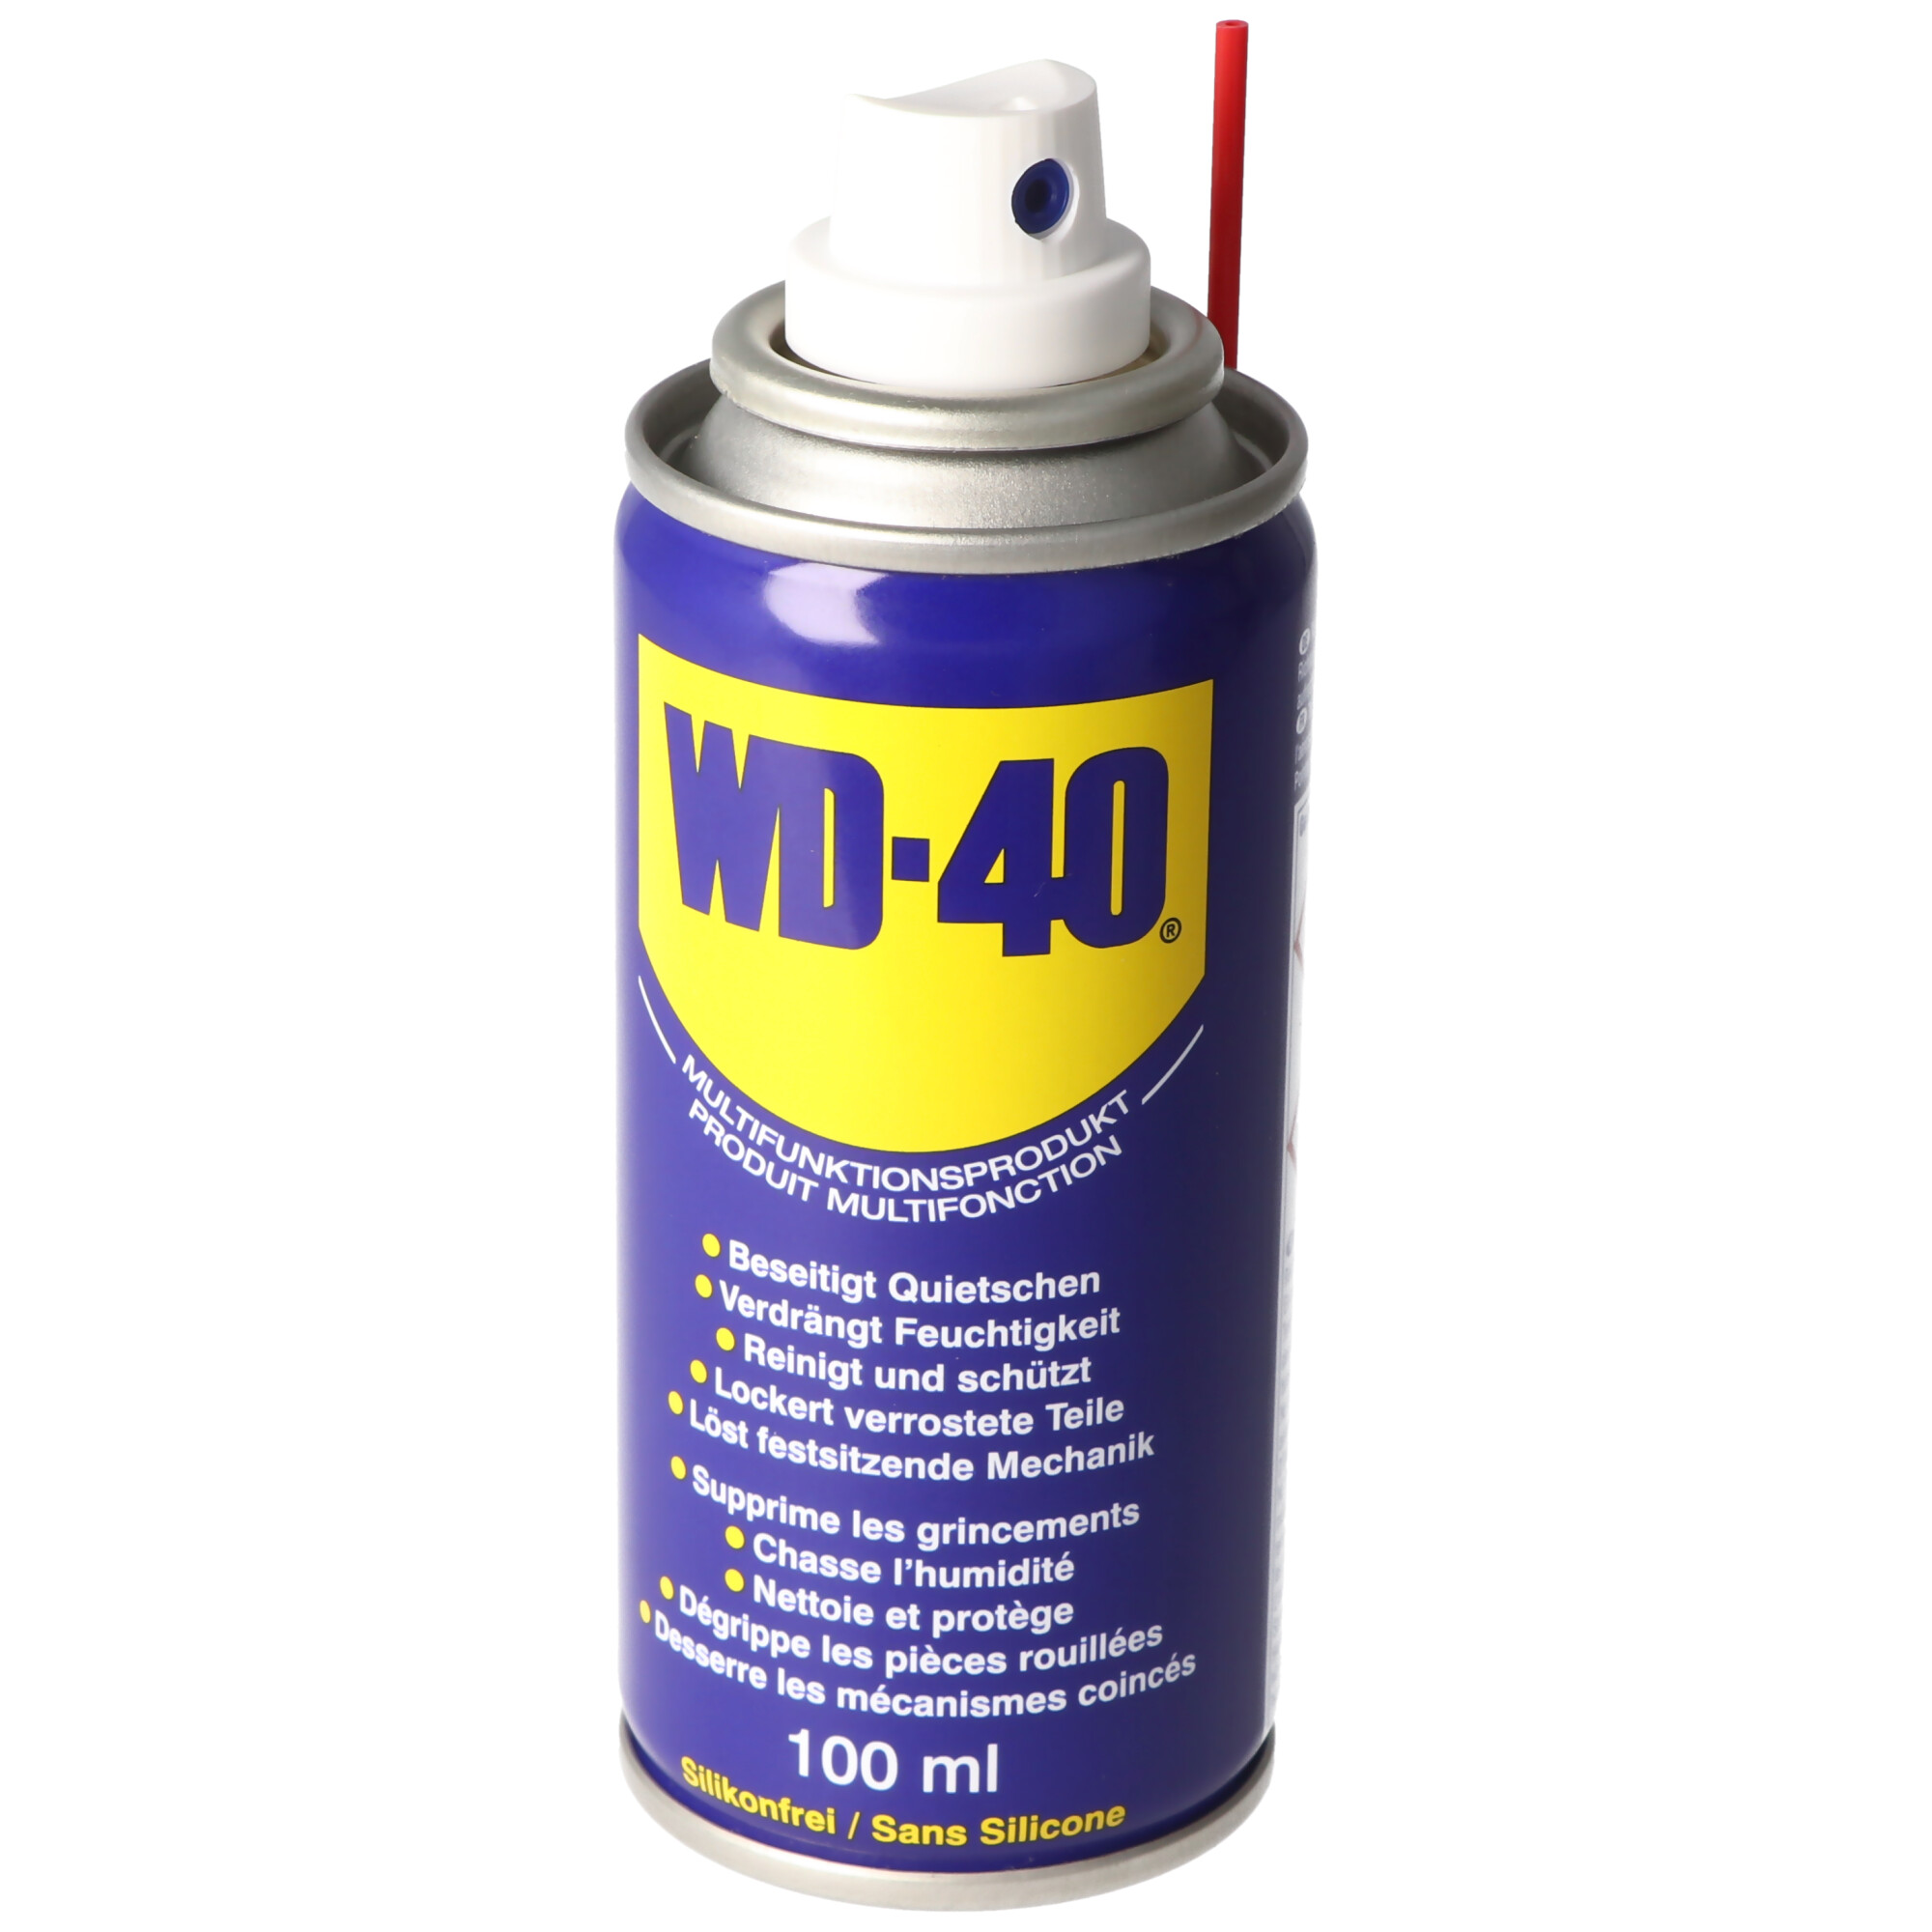 WD-40 multifunktionales Schmiermittel, beseitigt quietschen und knarren, 100ml